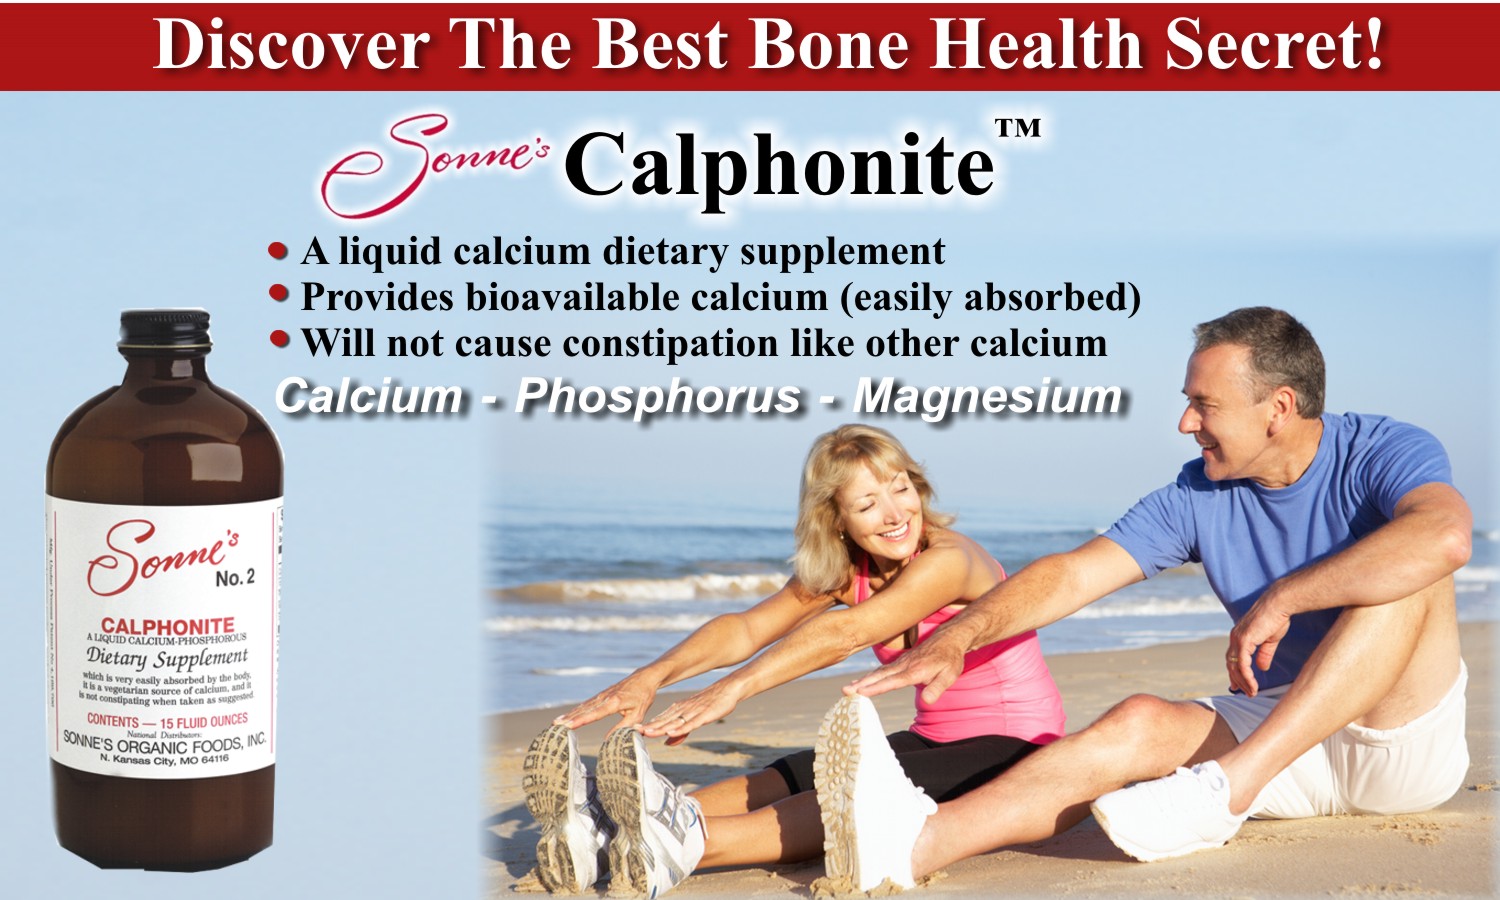 CALCIUM BONE HEALTH SECRET AD